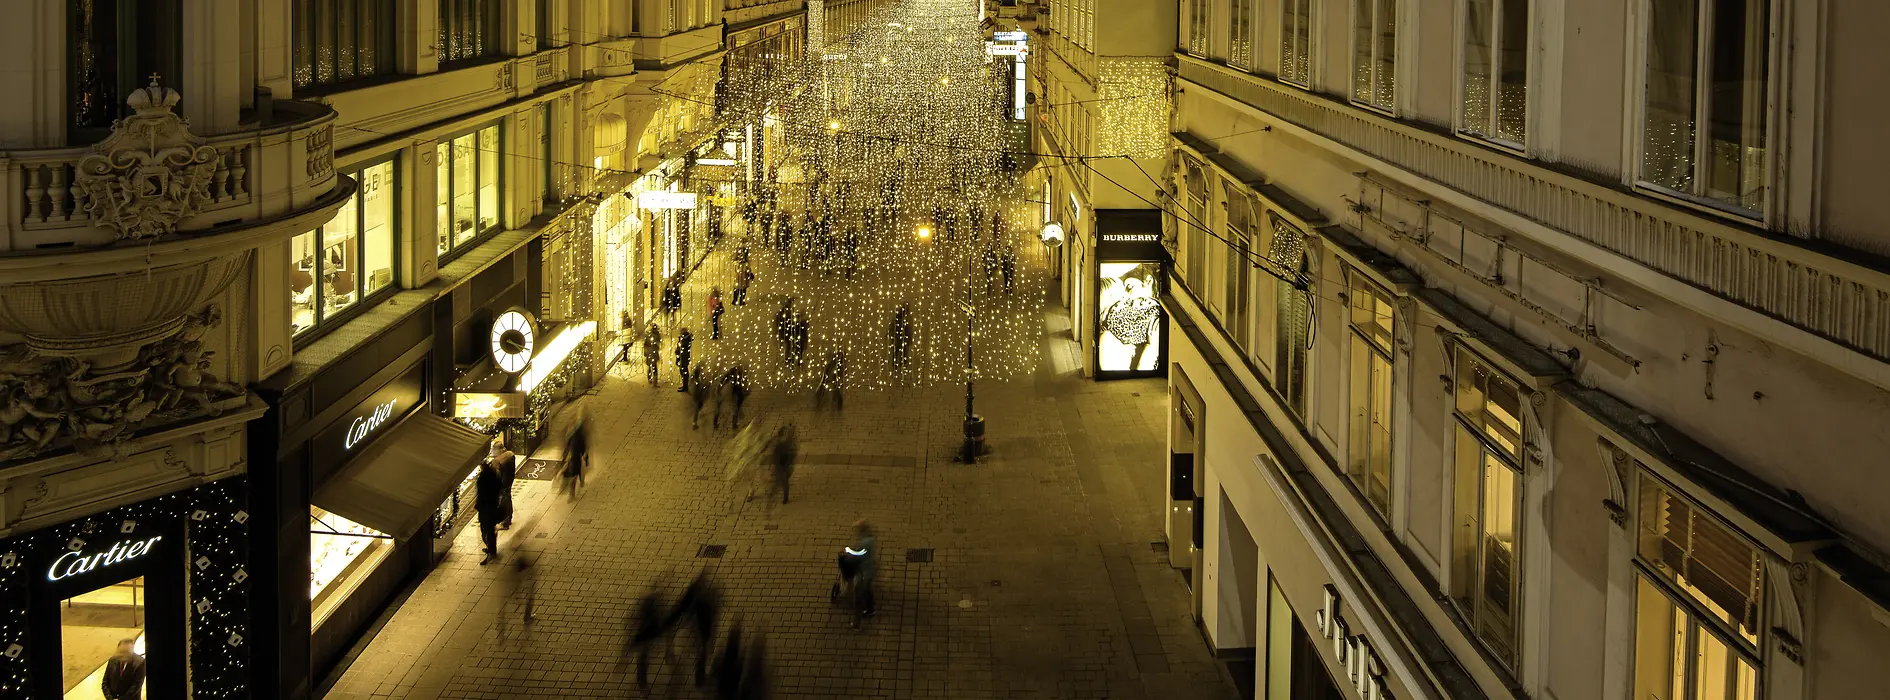 Люди прогуливаются вечером по празднично освещенной улице Кольмаркт 